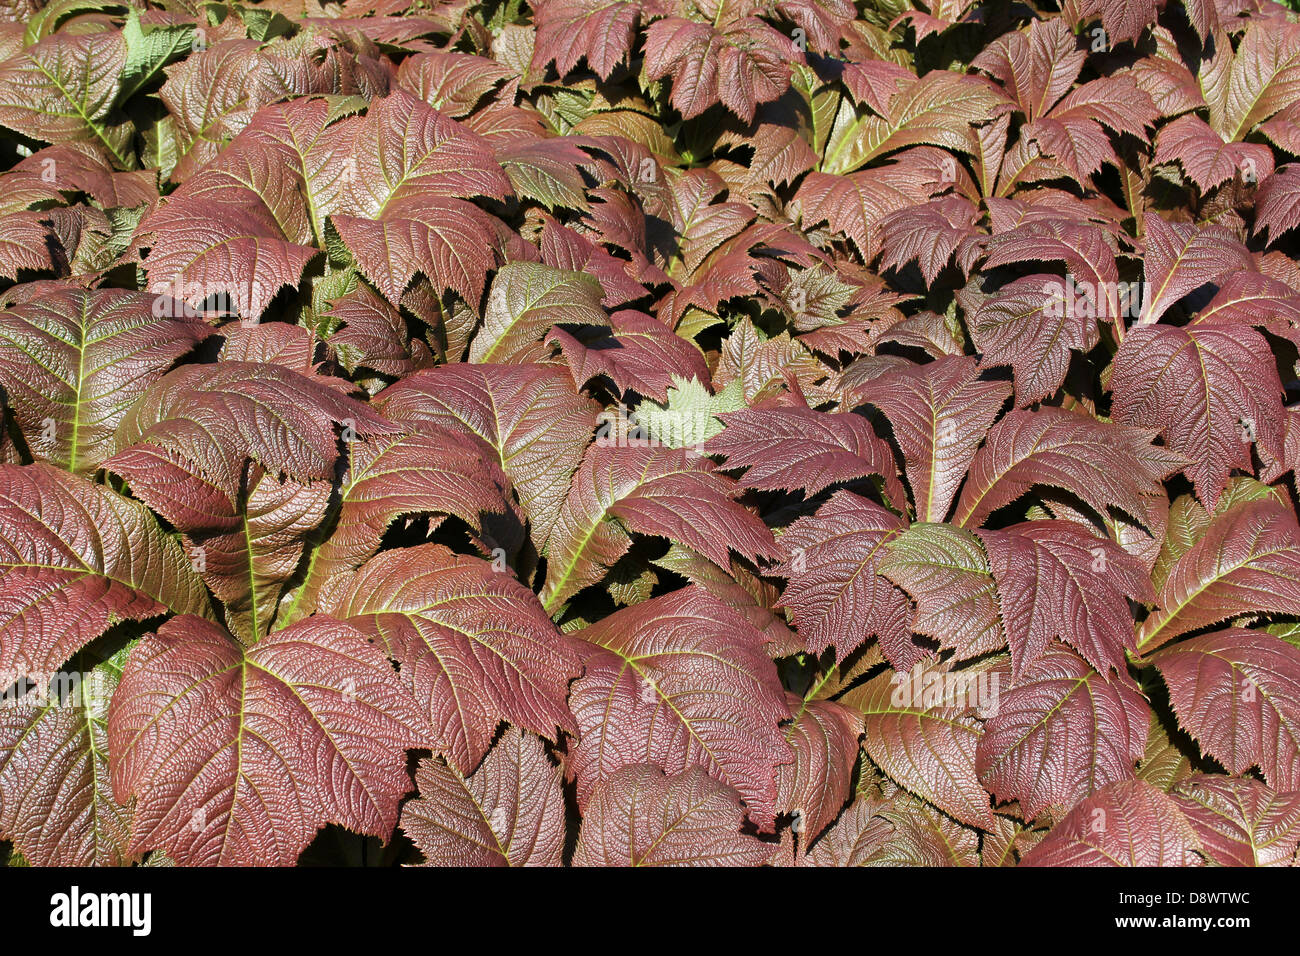 Marrón de las hojas de plantas ornamentales Foto de stock